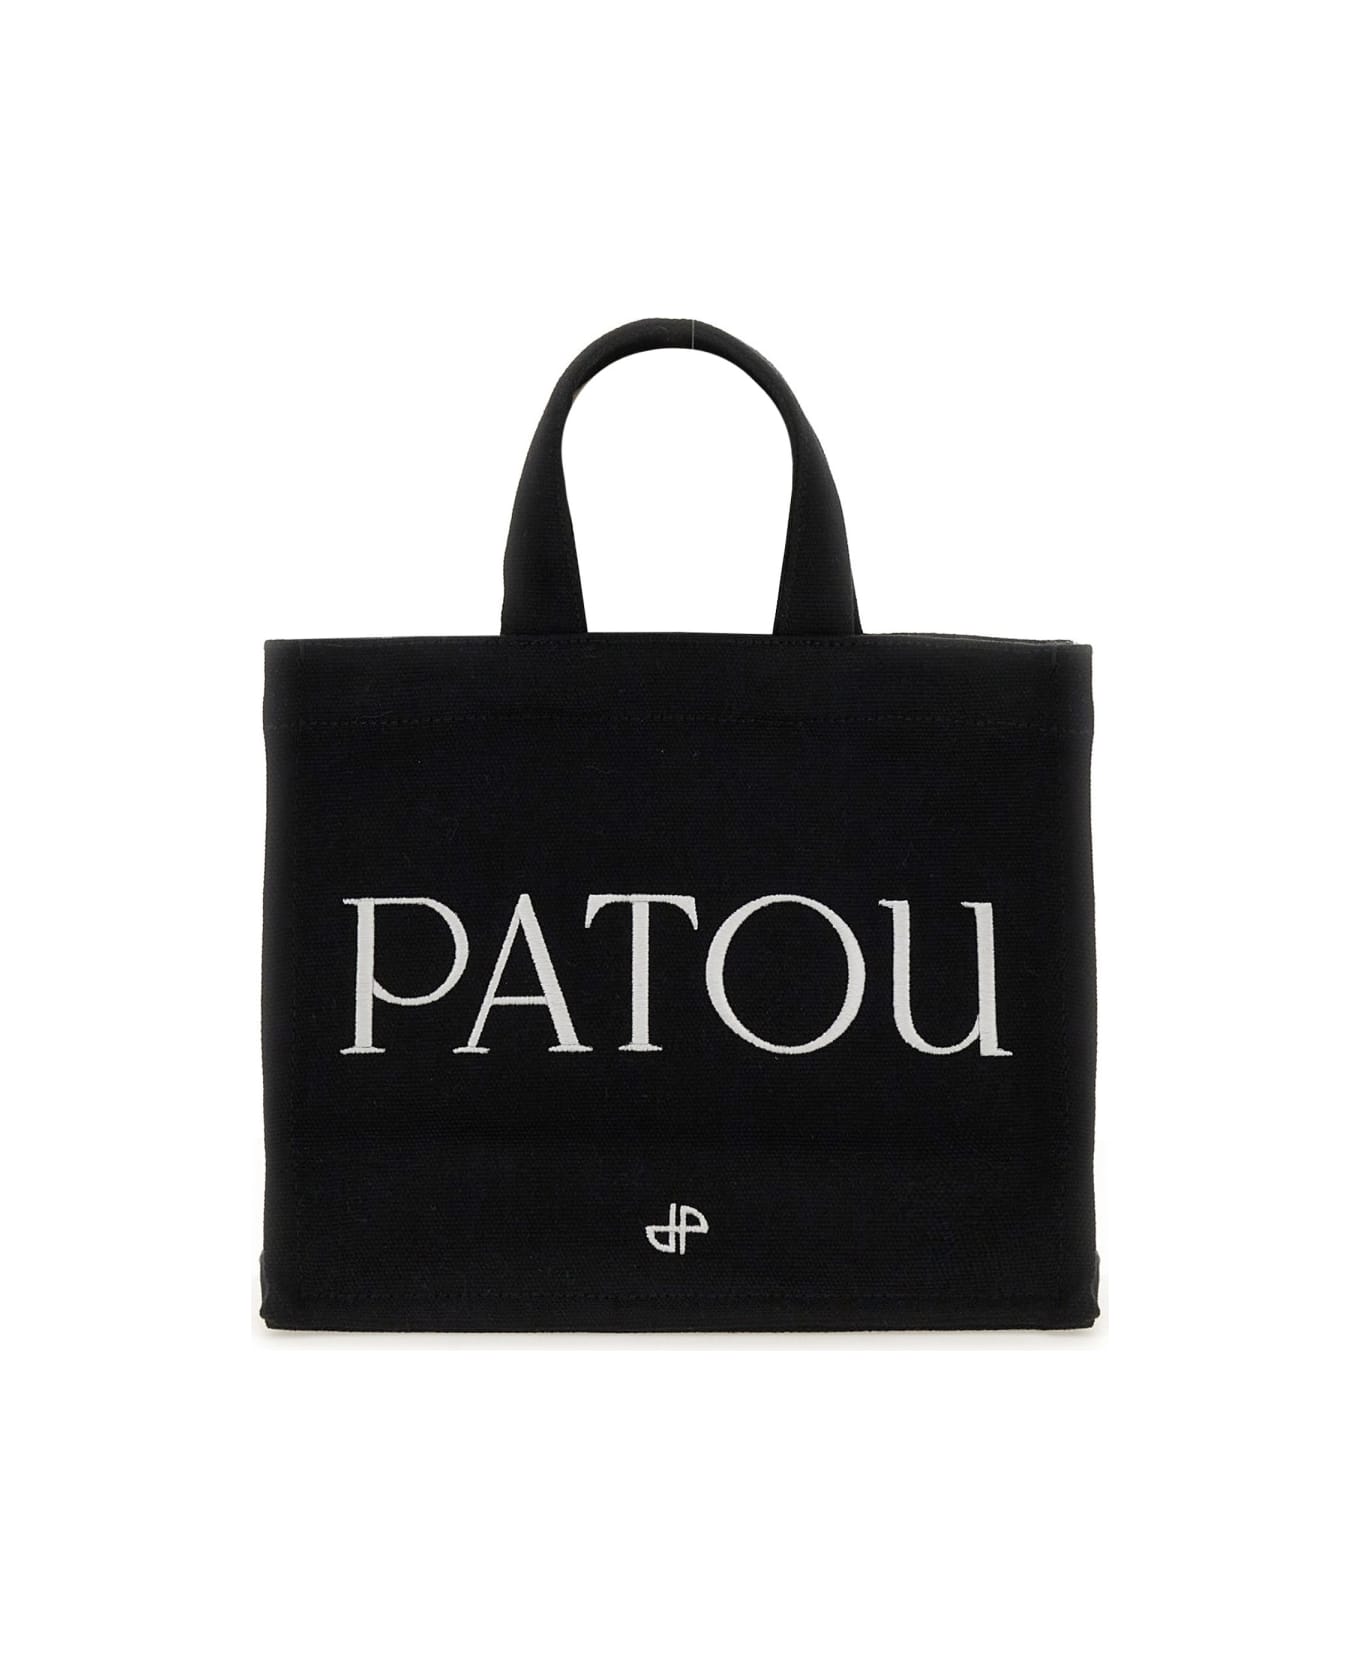 Patou Small 'patou' Tote Bag - BLACK